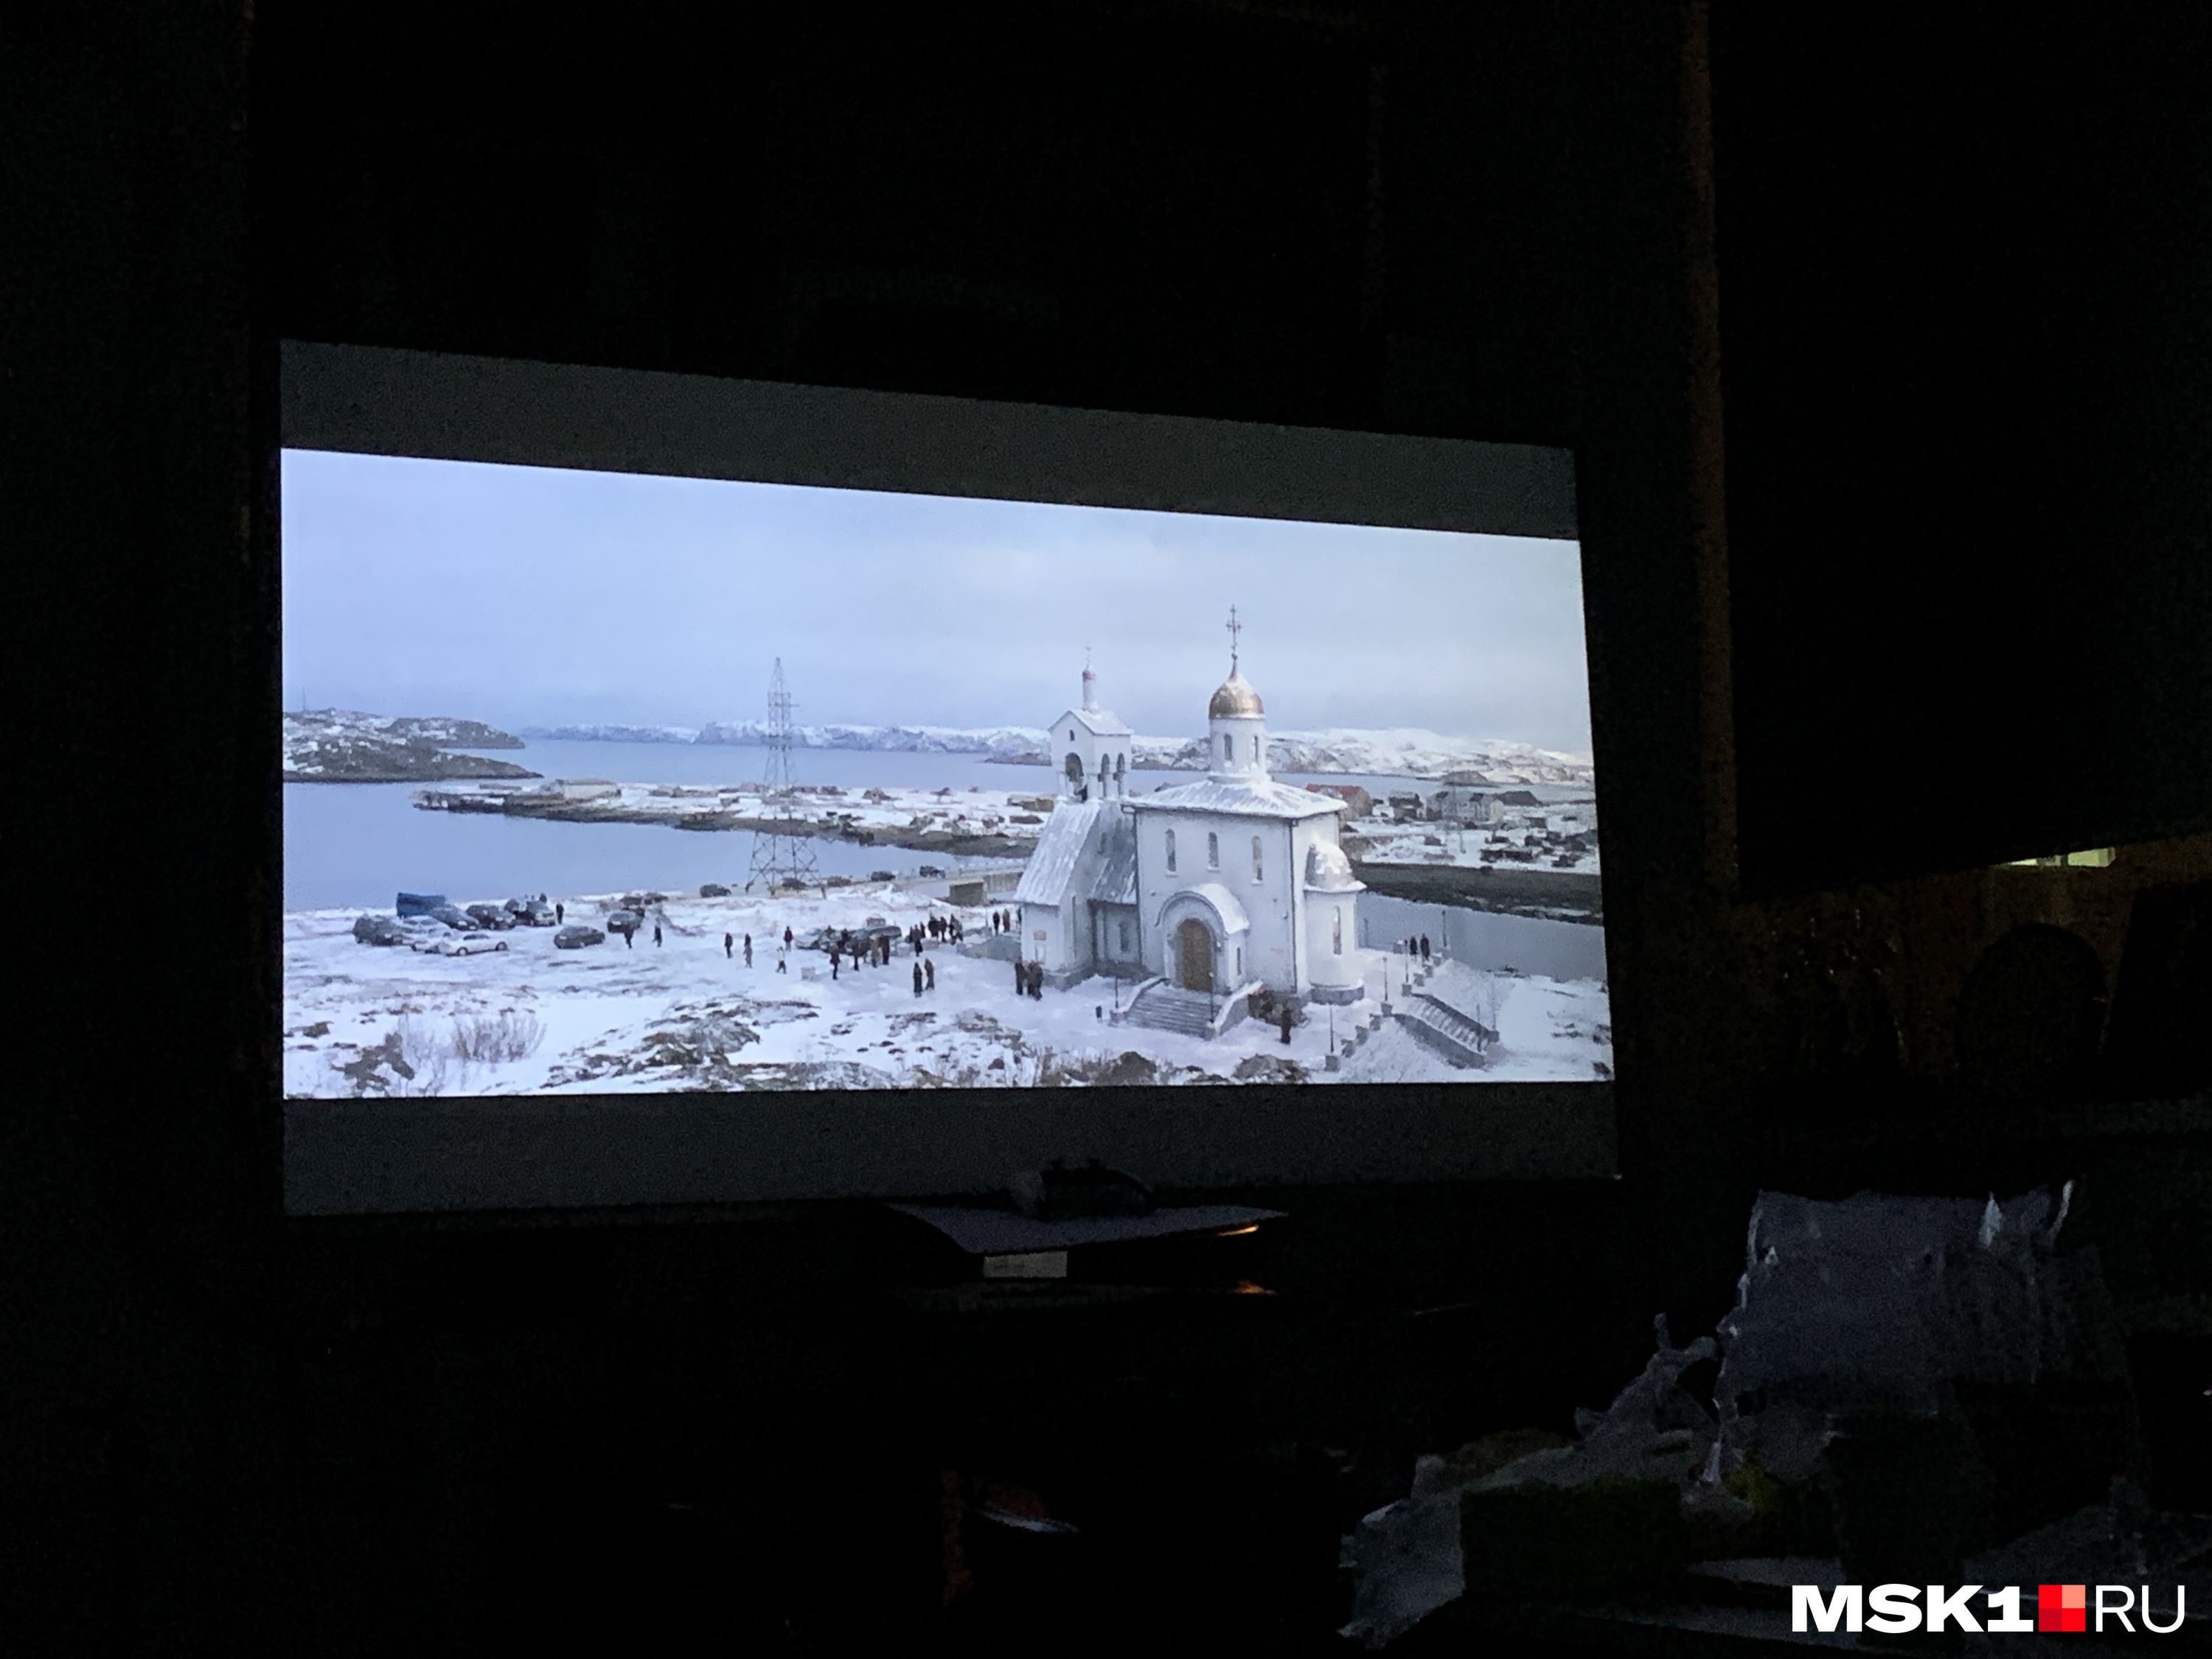 На паре по изучению кинофестивалей студенты в Пекине смотрели «Левиафан» Андрея Звягинцева